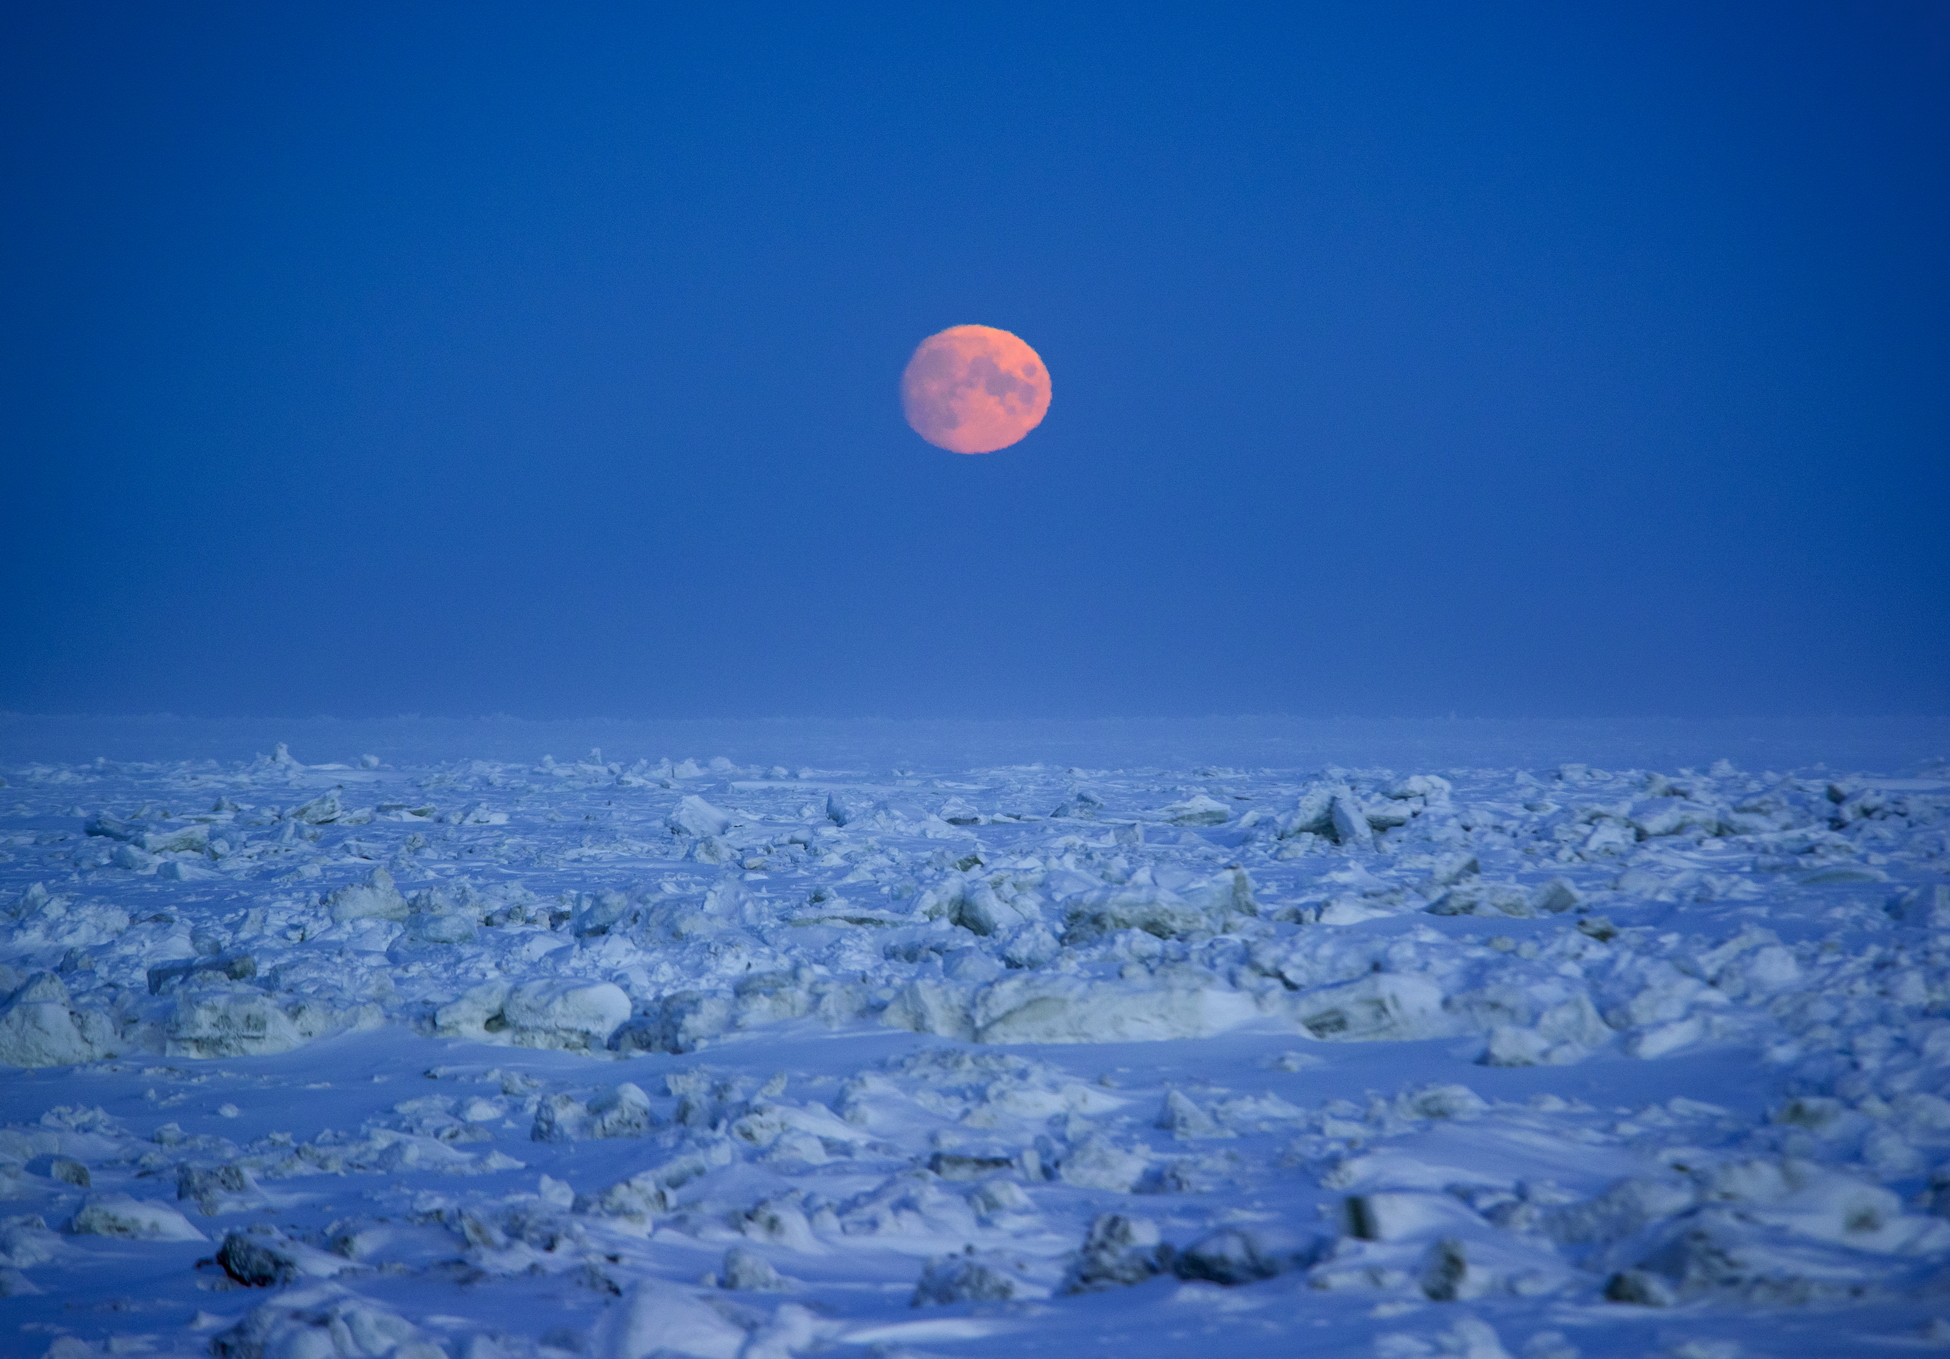 Арктика сегодня. В Ненецком автономном округе будет запущен крупный метаноловый проект